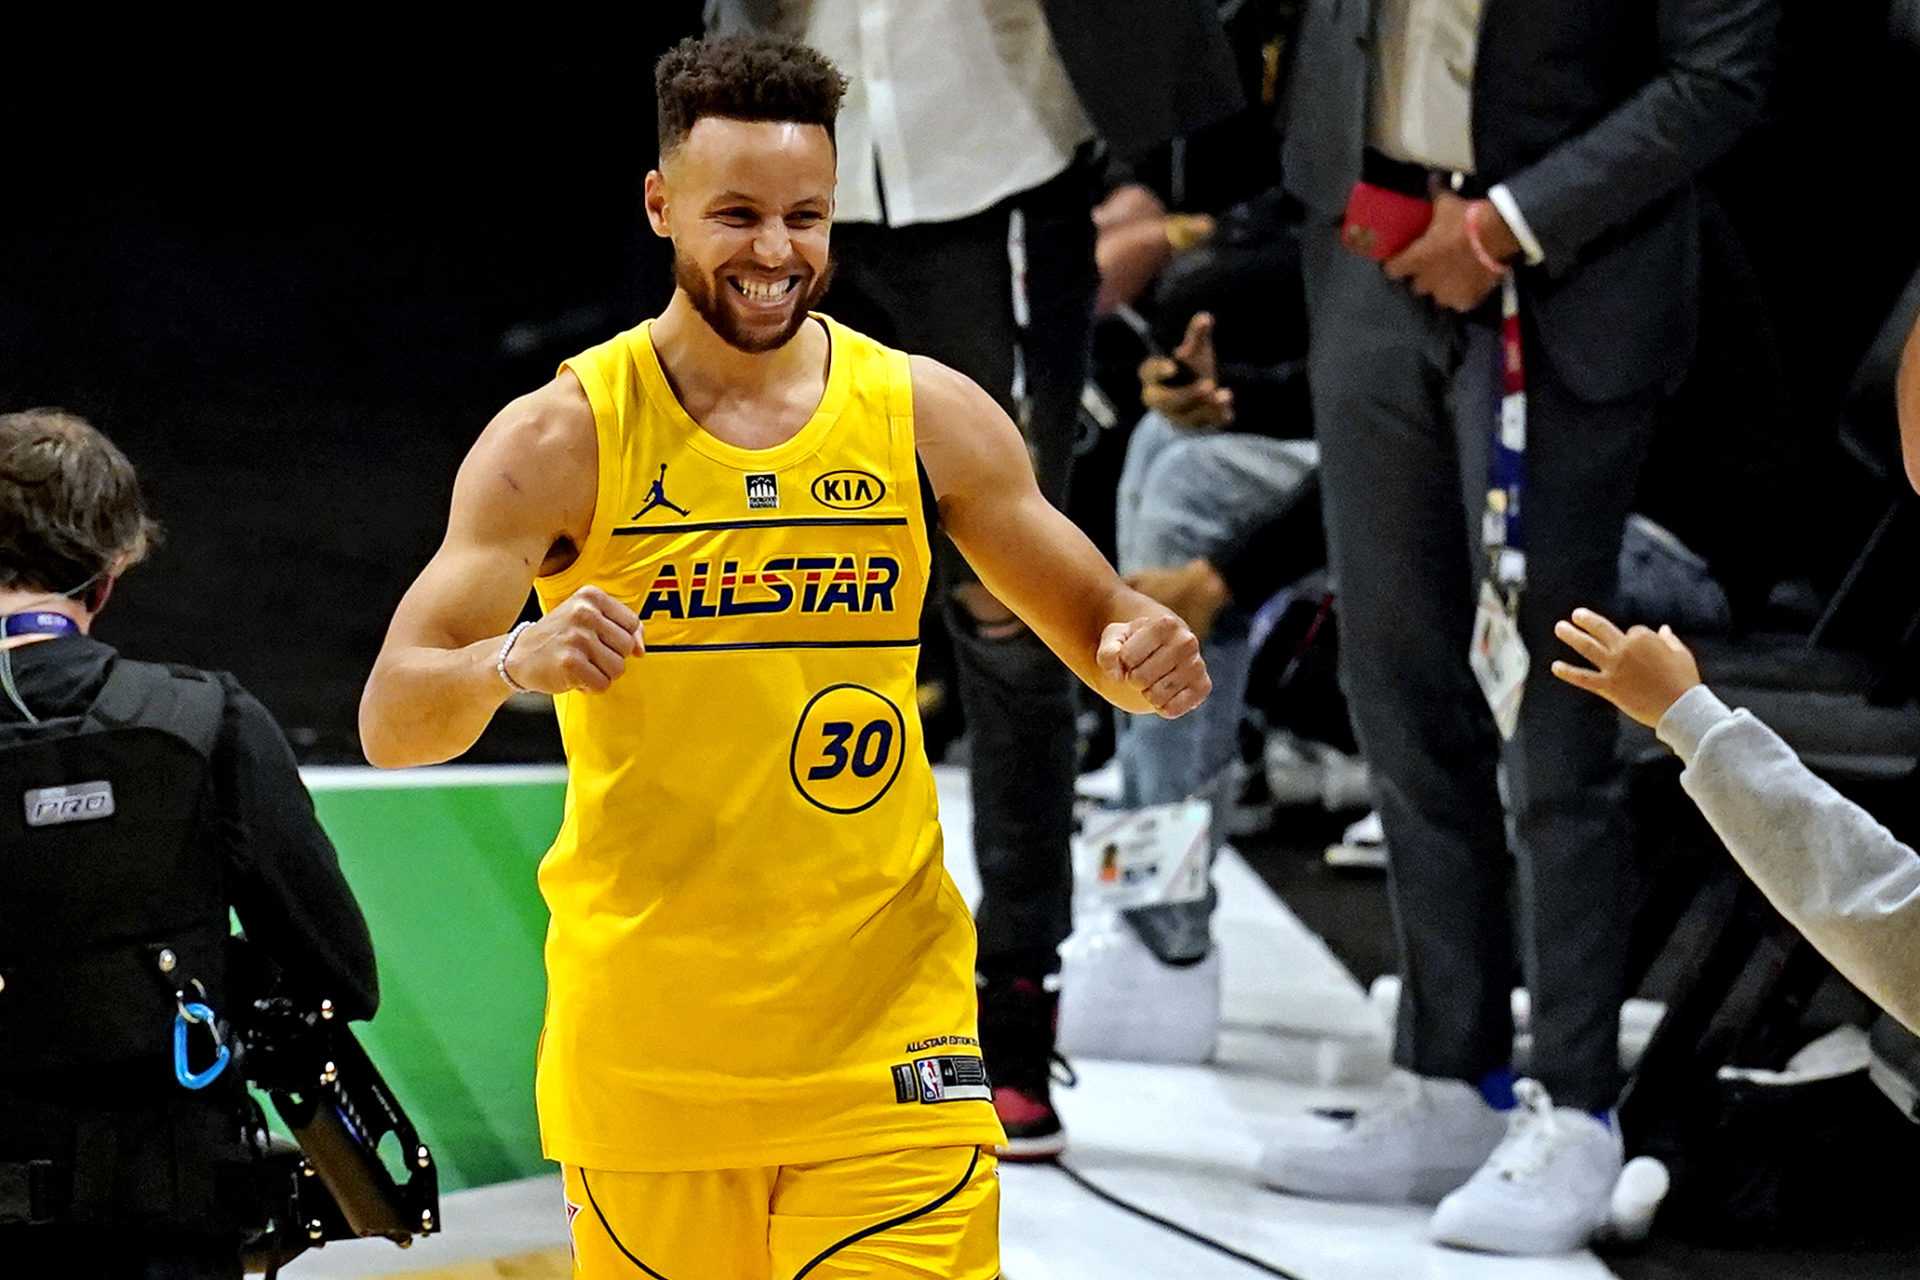 `` Jouer à un niveau vraiment élevé '': l'entraîneur-chef des Warriors soutient Stephen Curry pour ne pas vouloir prouver quoi que ce soit à qui que ce soit